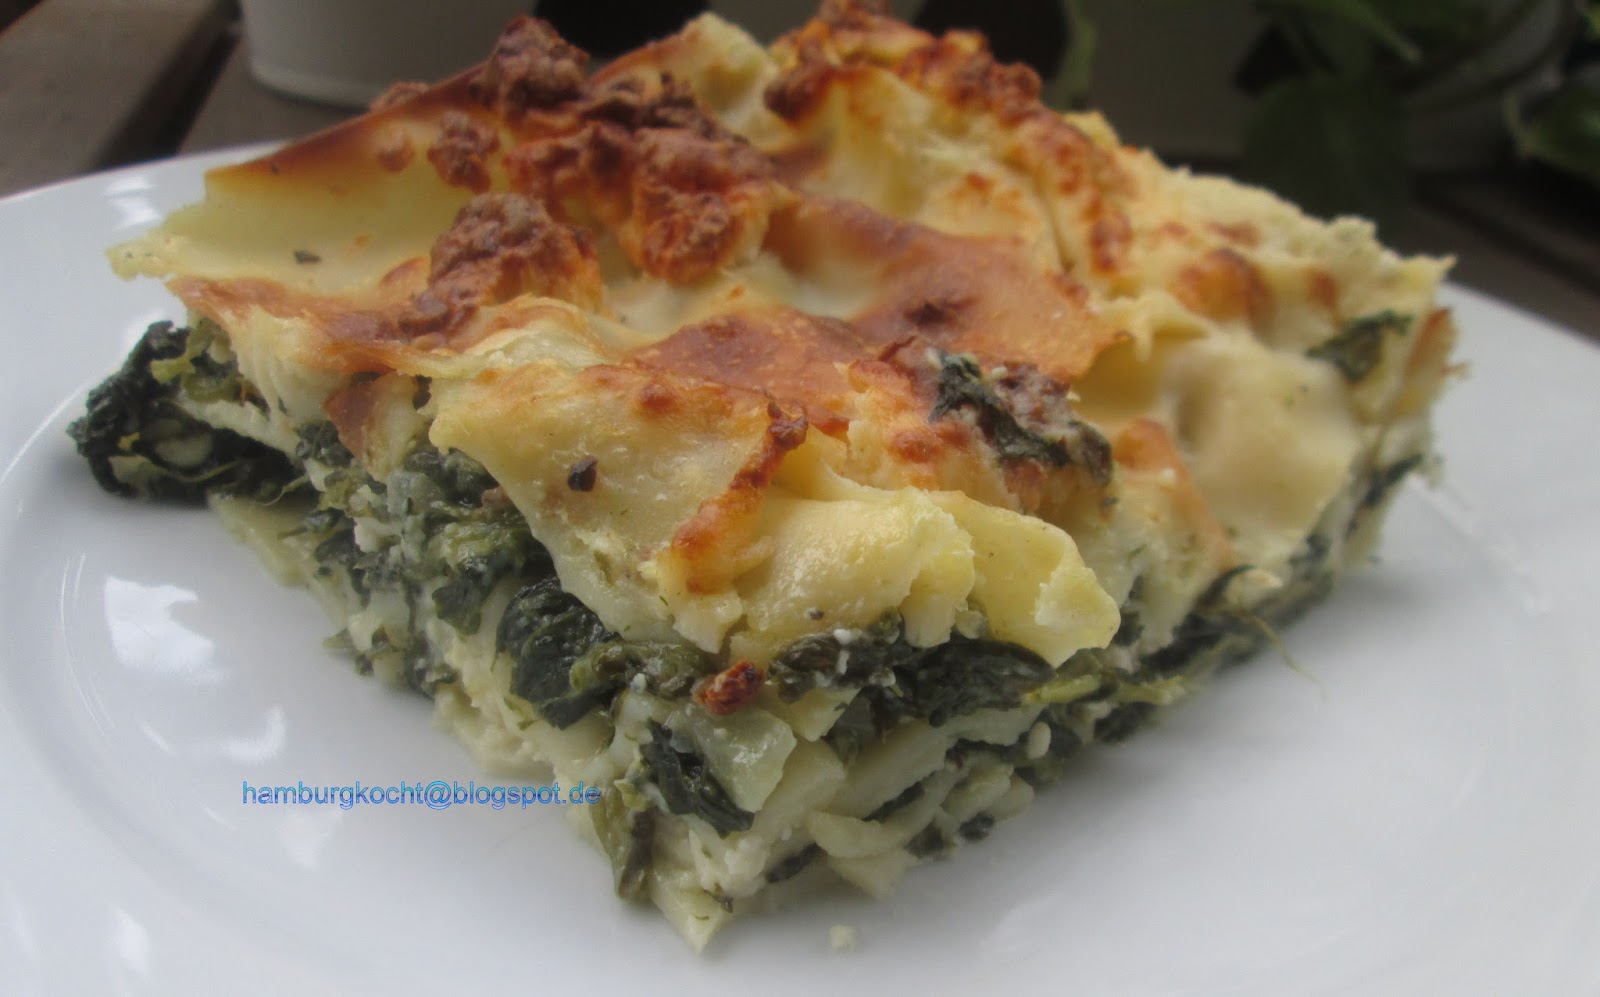 Hamburg kocht!: Kochen ohne Tüte: Spinat-Schafskäse-Lasagne